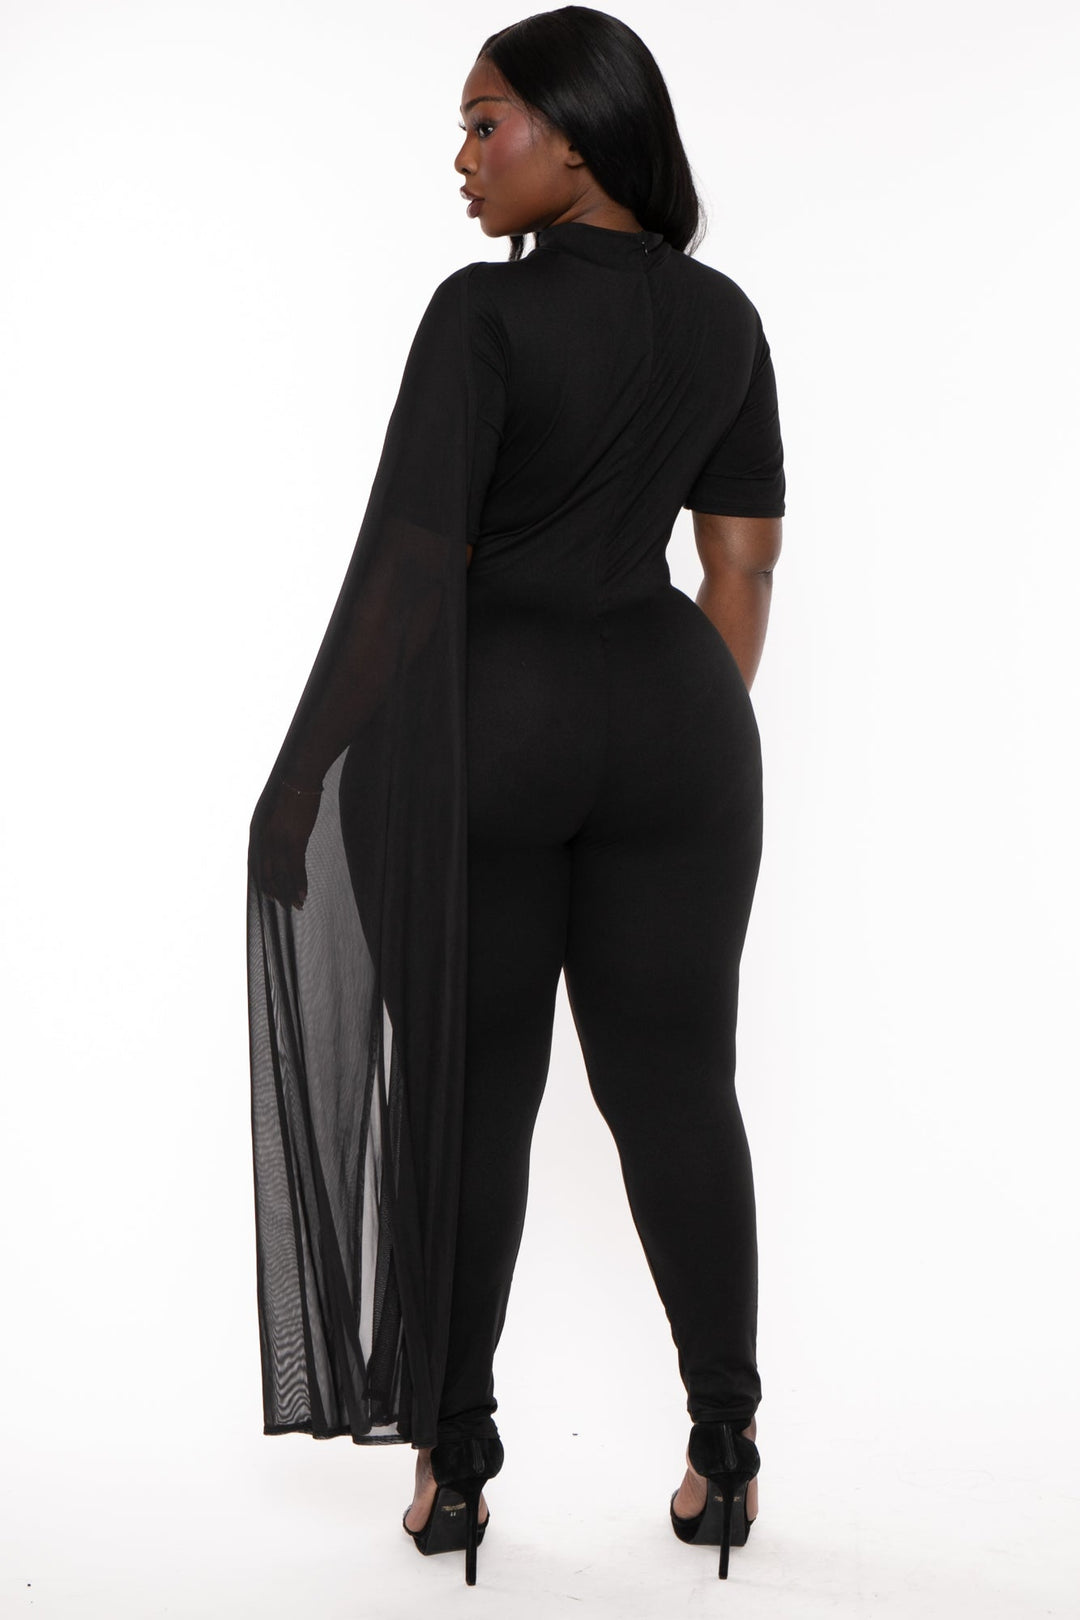 J2 FASHION Dresses Plus Size Dallyn Mesh Drape Jumpsuit- Black